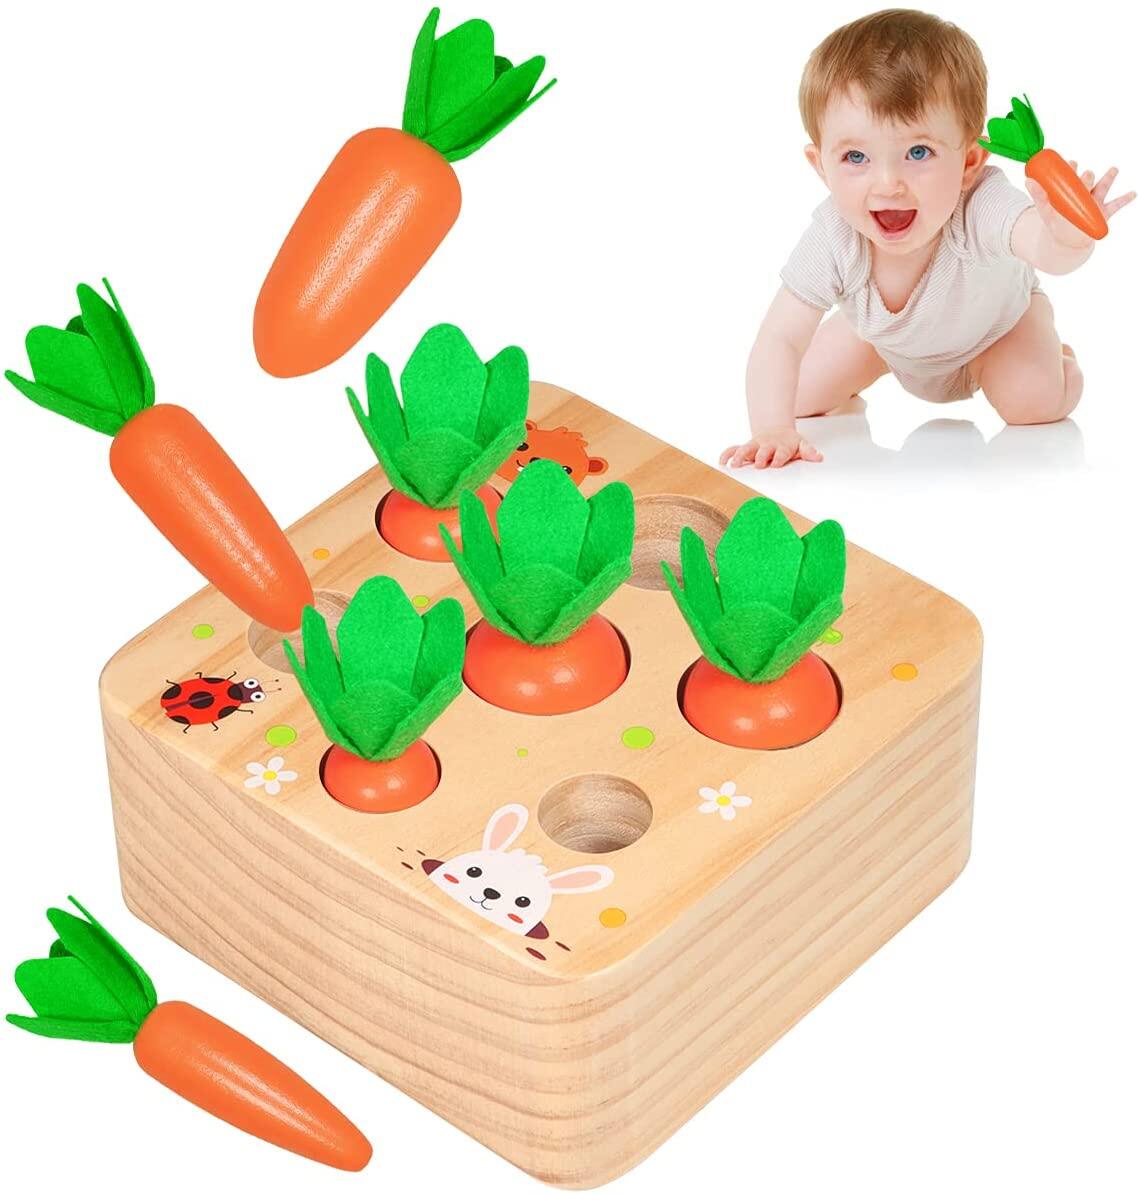 Máy phân loại cho trẻ em 1 2 3 năm đồ chơi thông minh Montessori